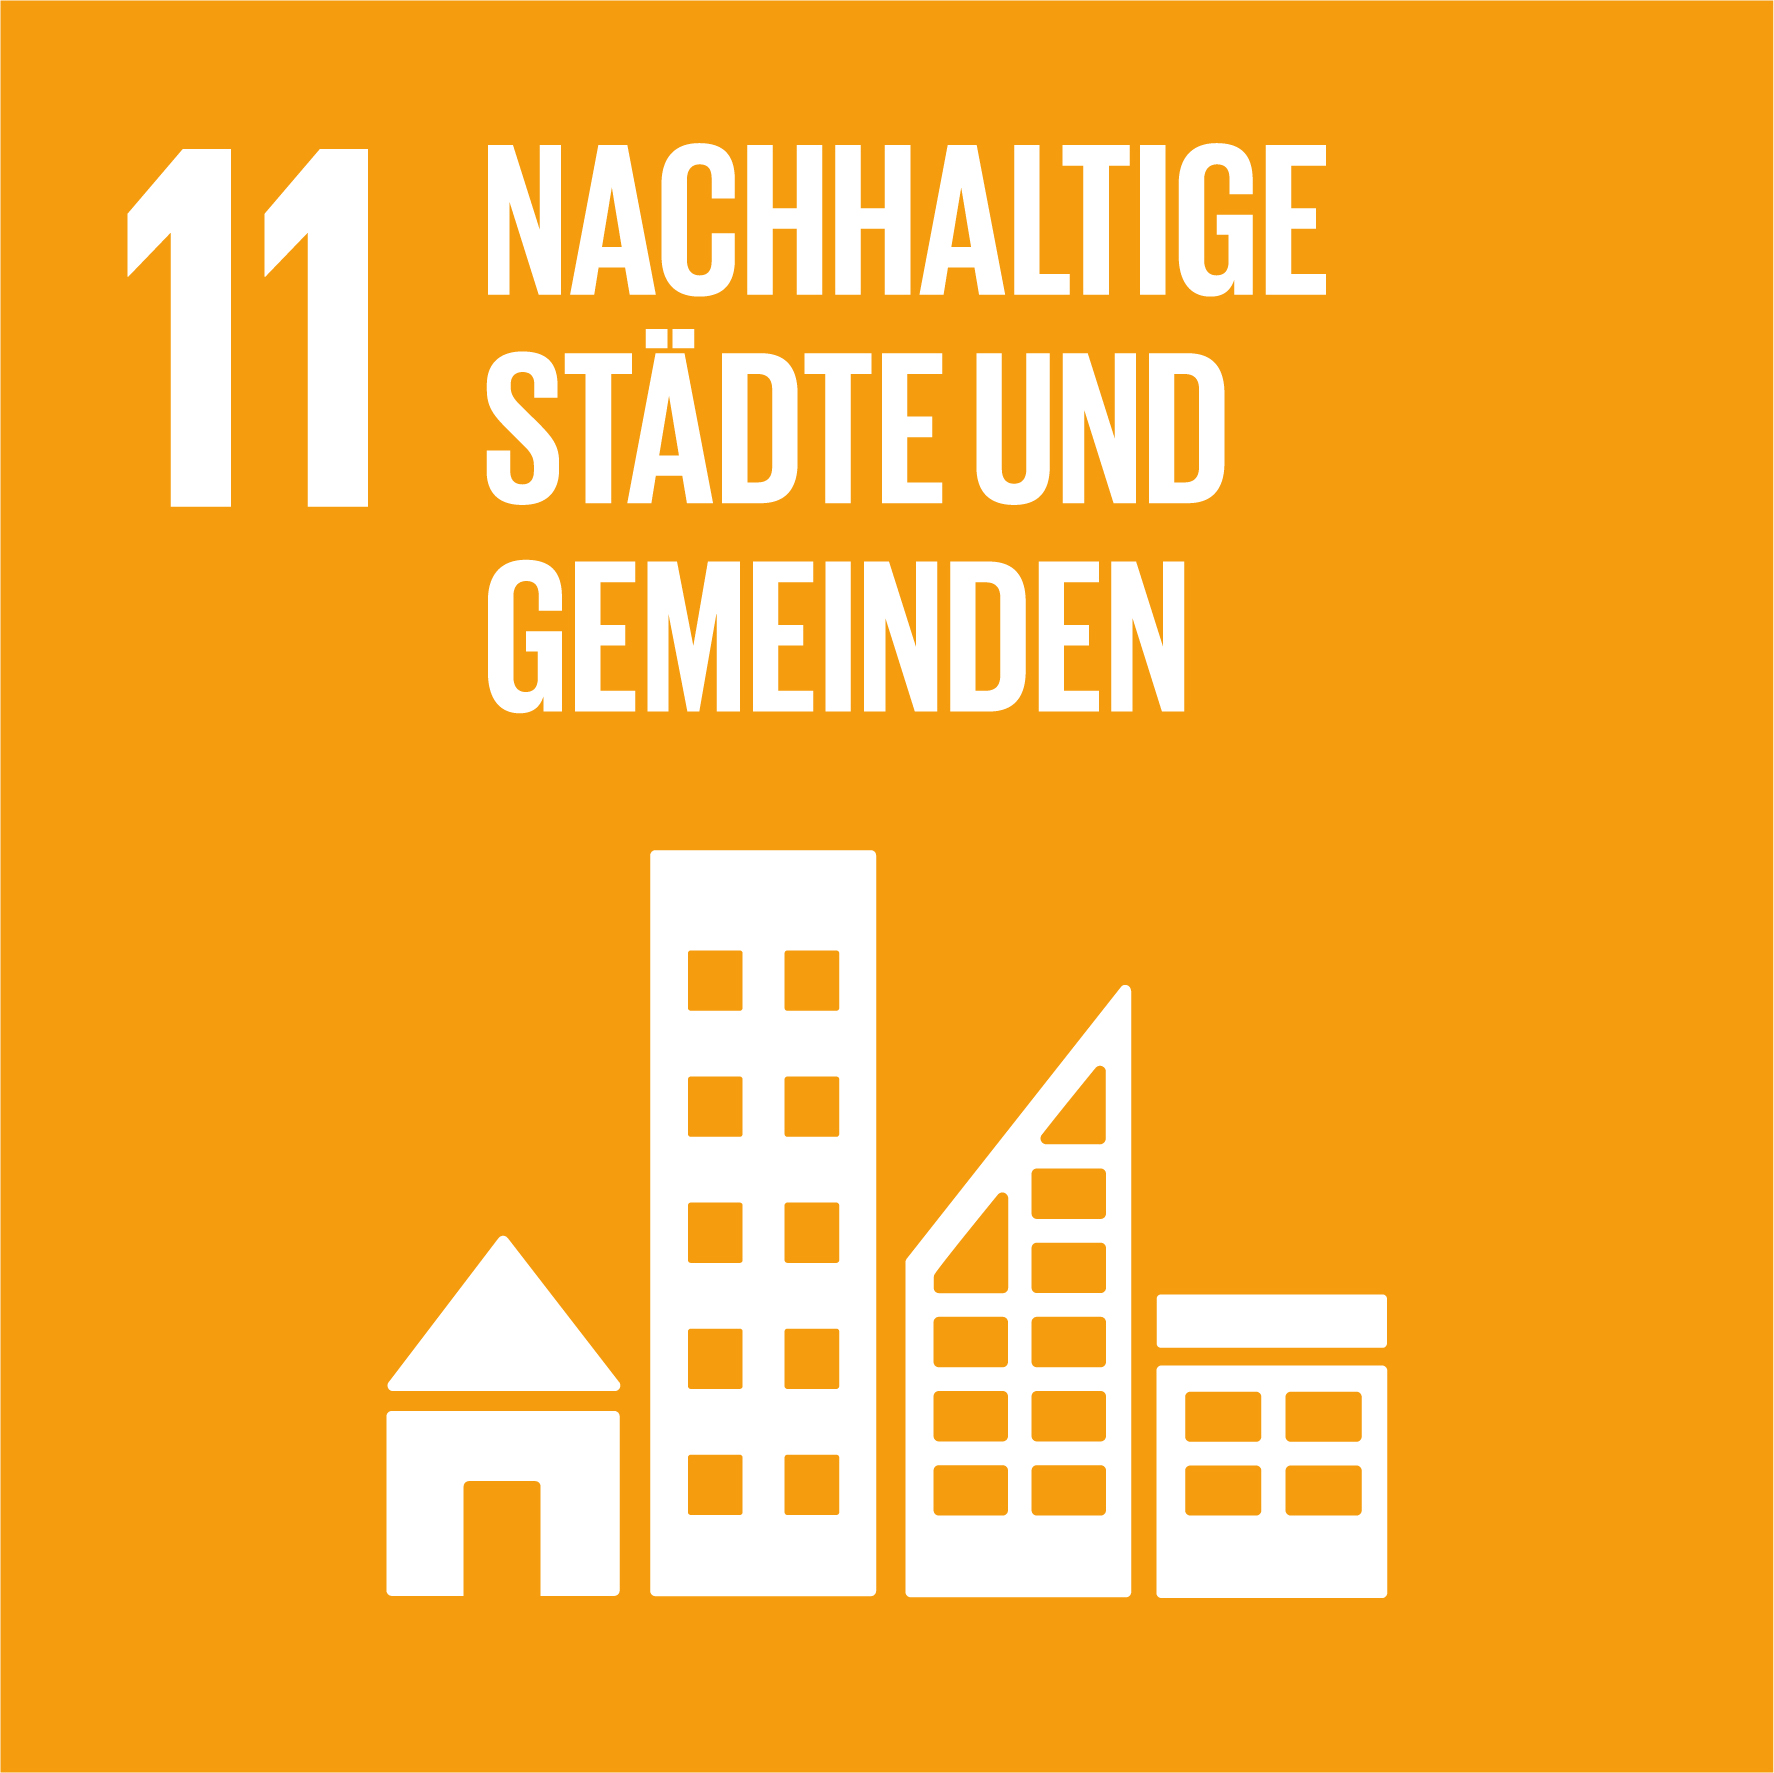 Schaubild von Ziel Nummer 11 der Nachhaltigkeit „Nachhaltige Städte und Gemeinden"